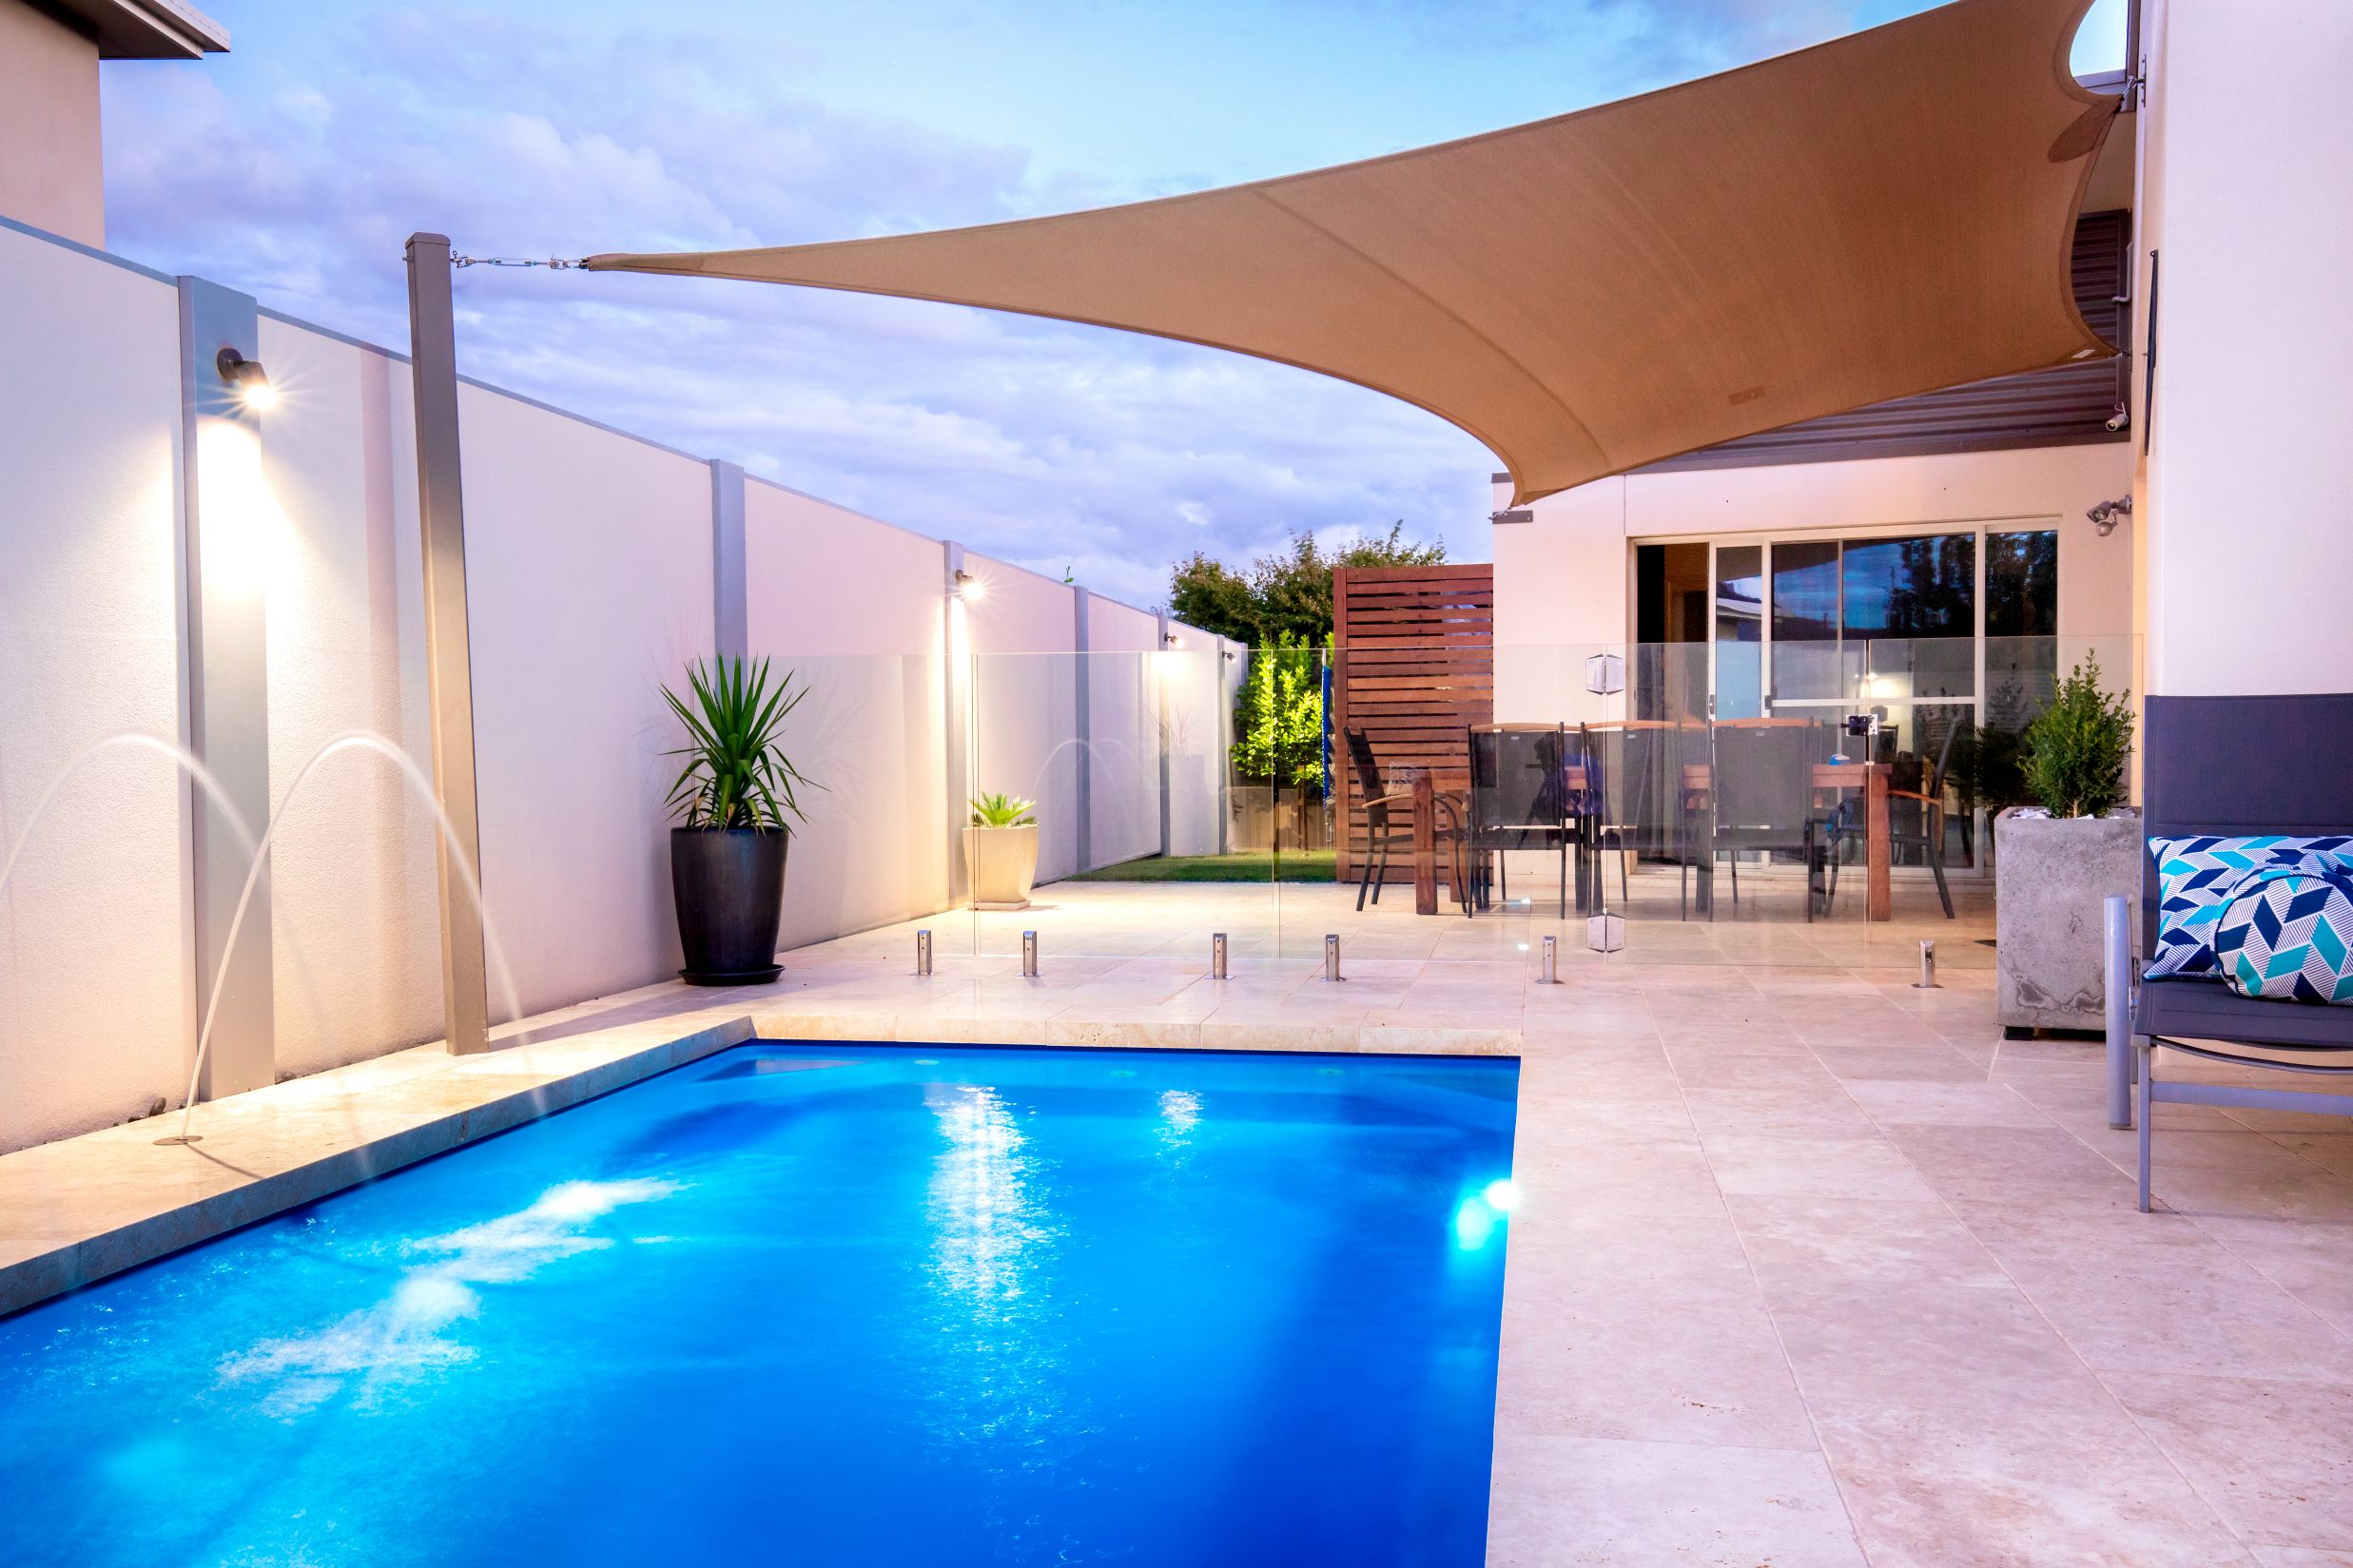 Luxury swimming pool in backyard